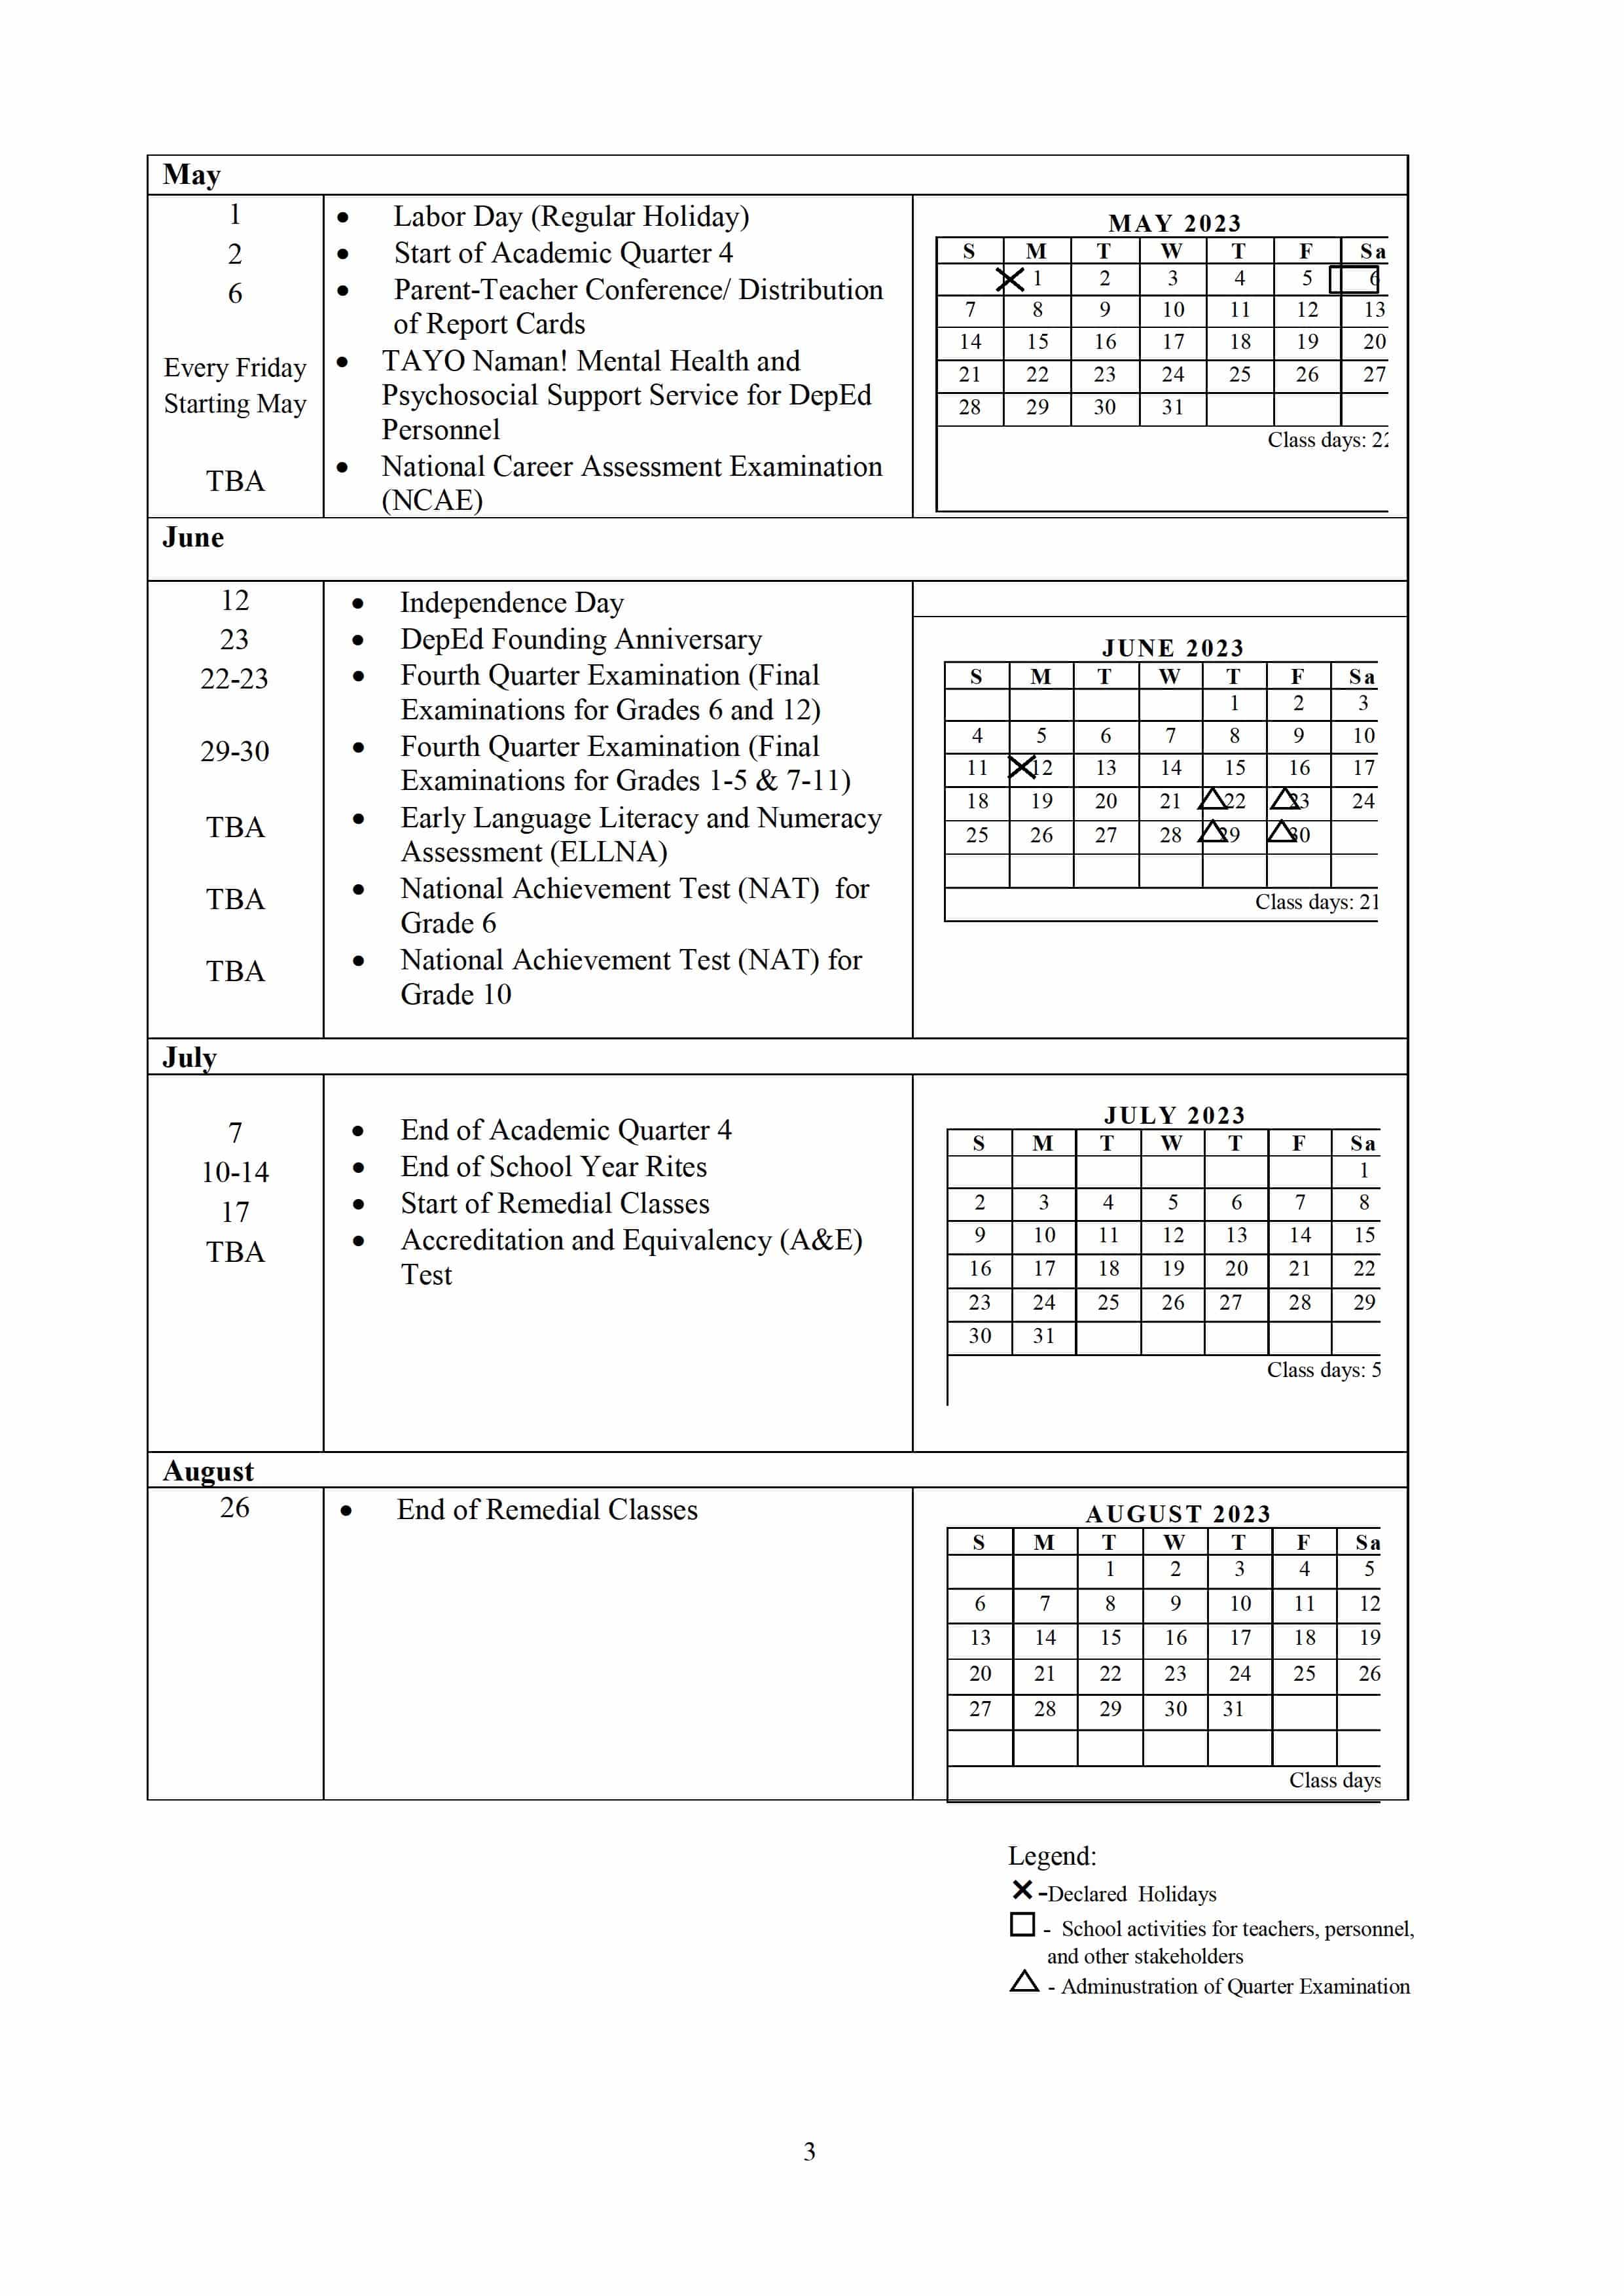 Deped Teacher S Blog School Calendar And Activities For School Year ...